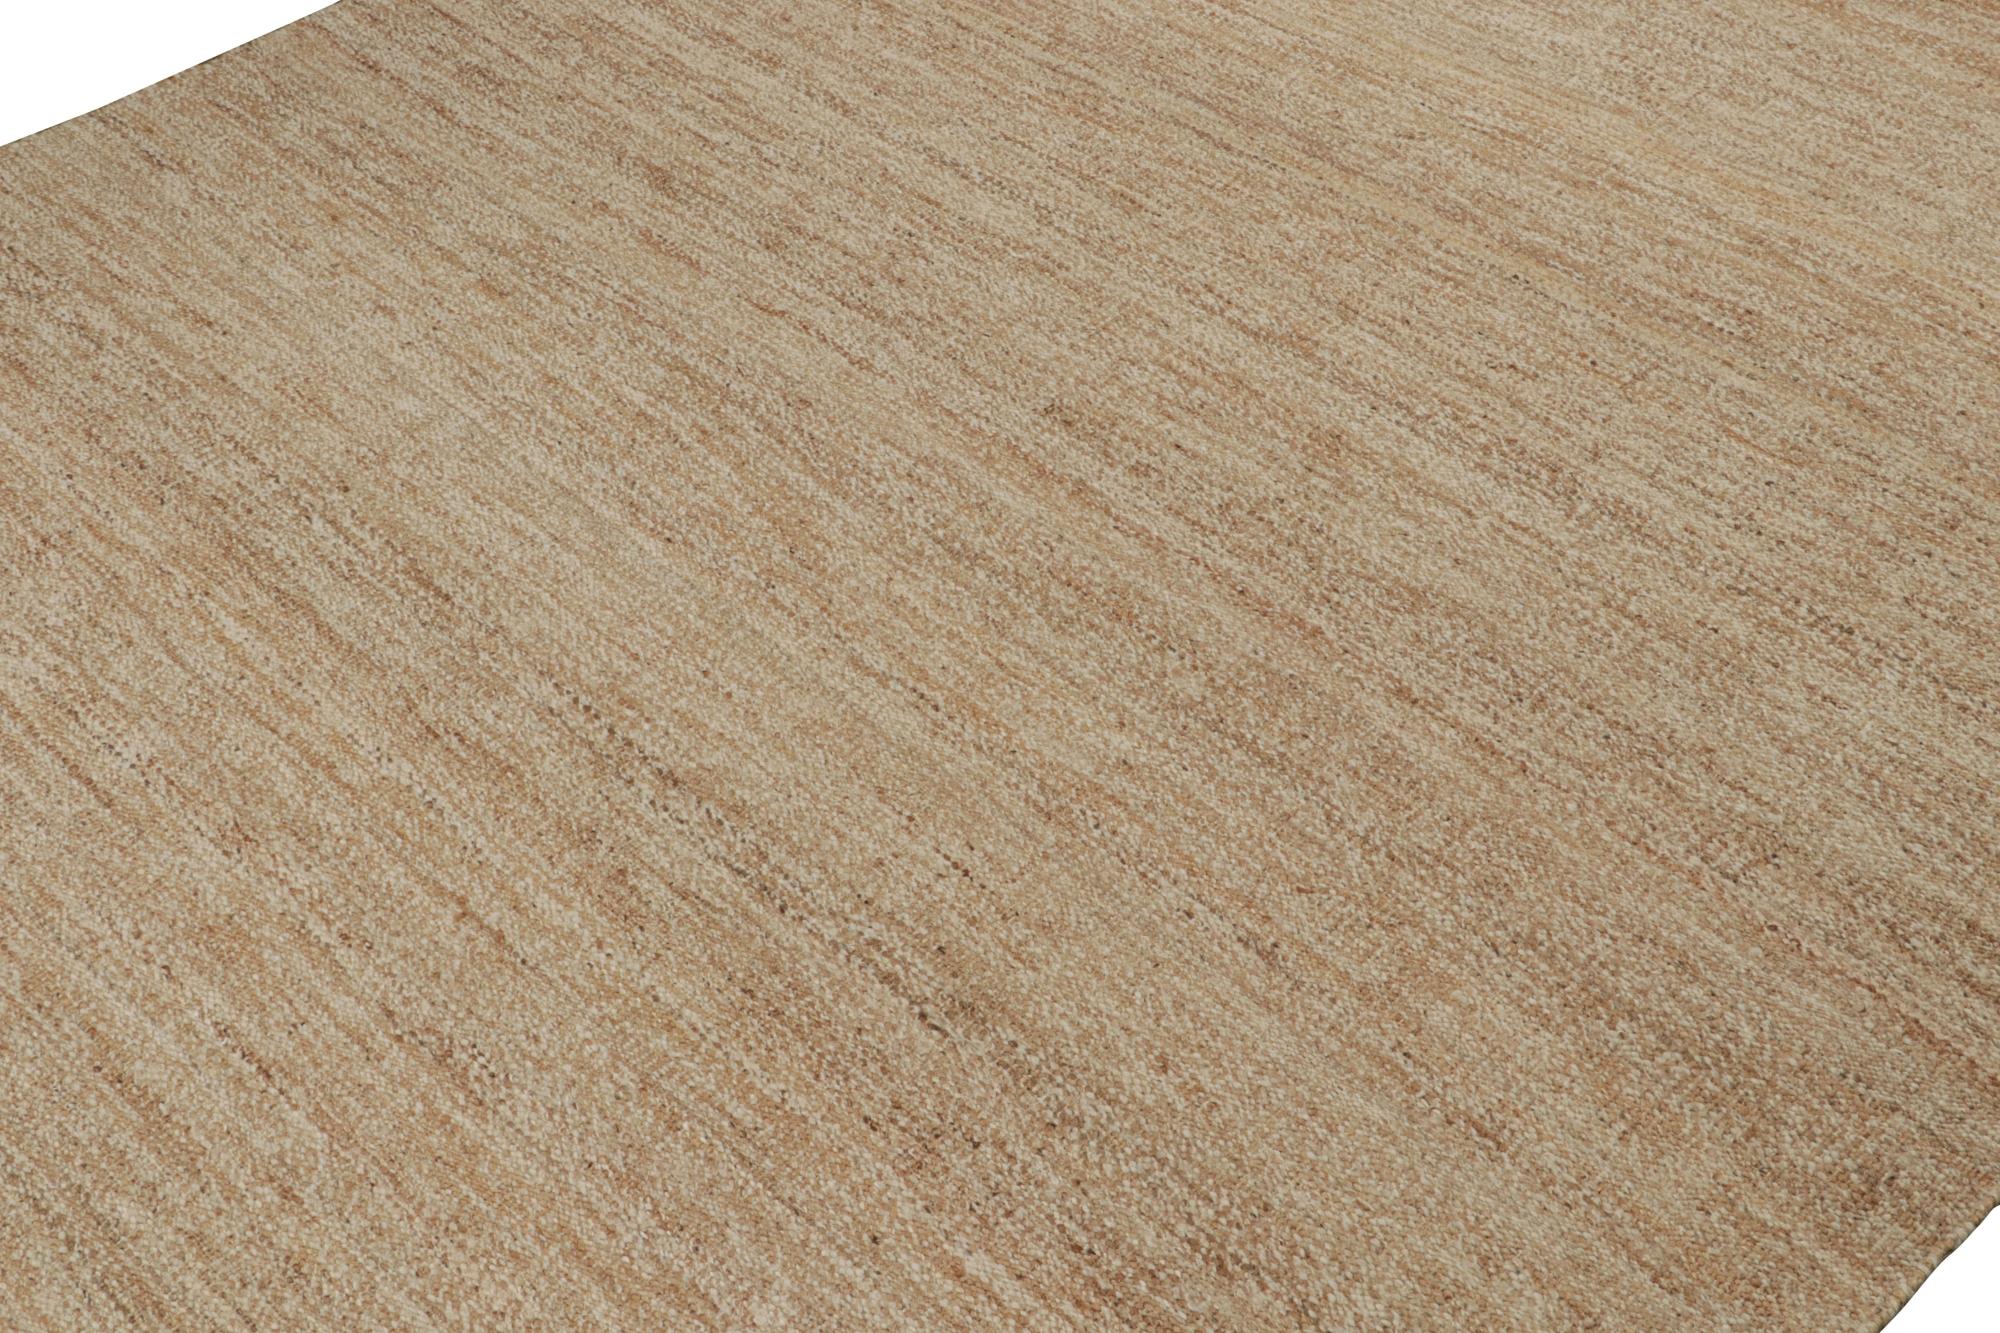 Ce tissage plat contemporain 12x18 fait partie de la toute nouvelle collection de Rug & Kilim, tissée à la main en jute naturel.

Sur le Design : 

Ce Rug & Kilim surdimensionné présente une texture bouclée de bon goût et un sens du mouvement qui